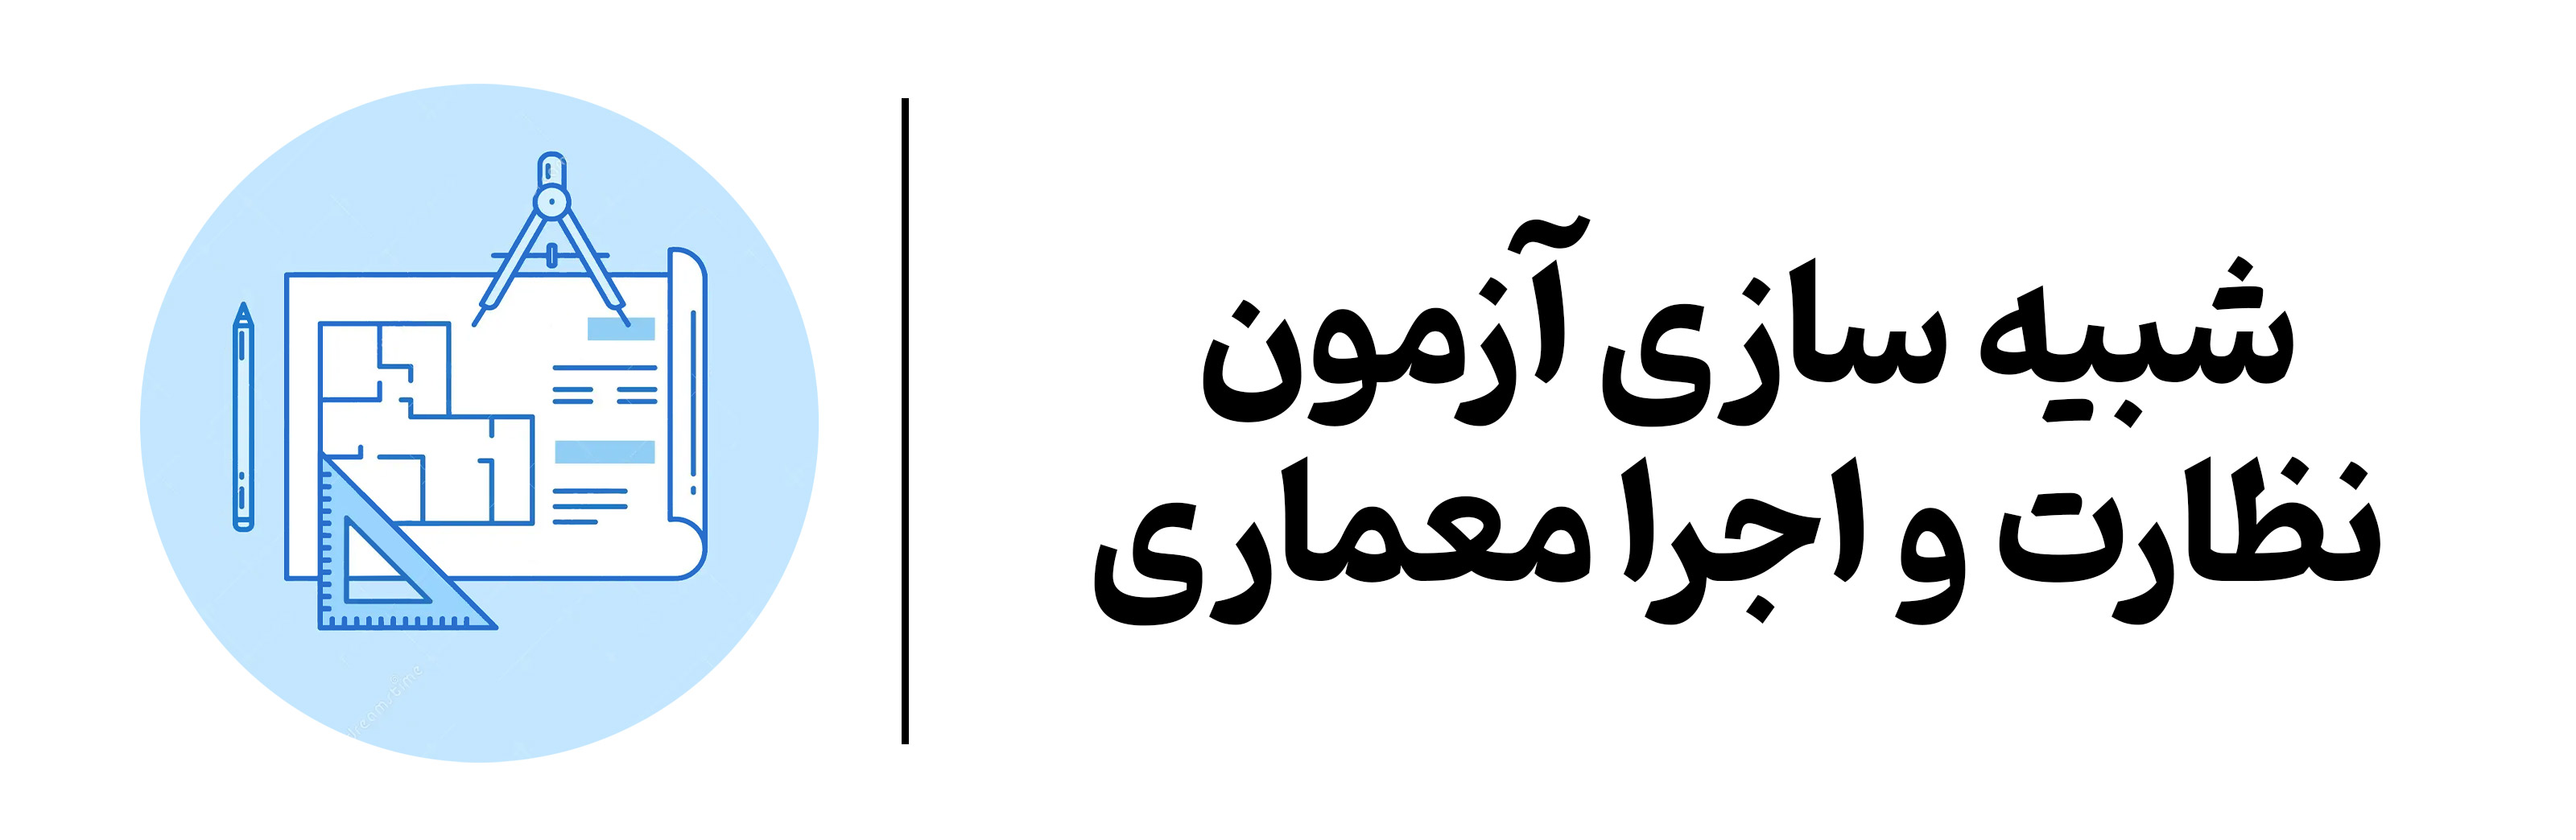 شبیه سازی آزمون نظارت و اجرا معماری mehregan esfahan